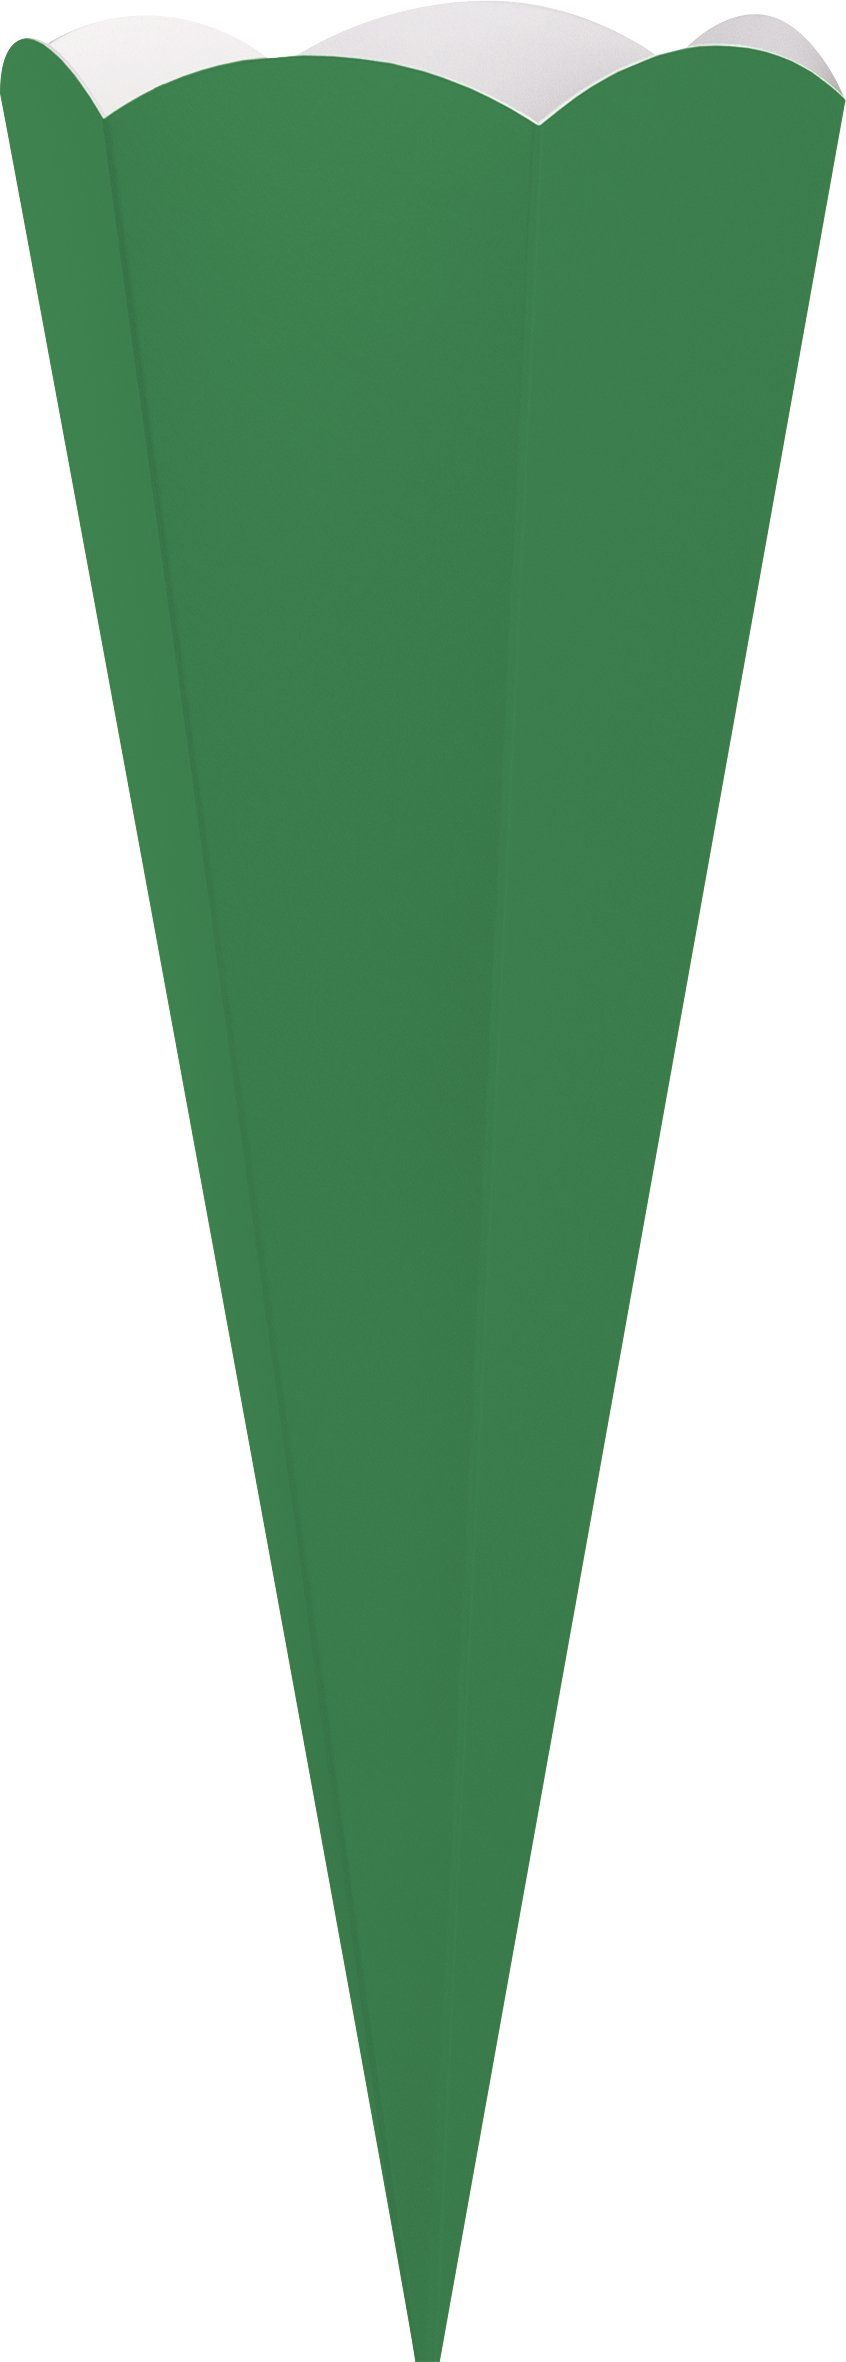 Schultüte Grün Geschwister-Schultüten-Zuschnitt, 41 Heyda cm